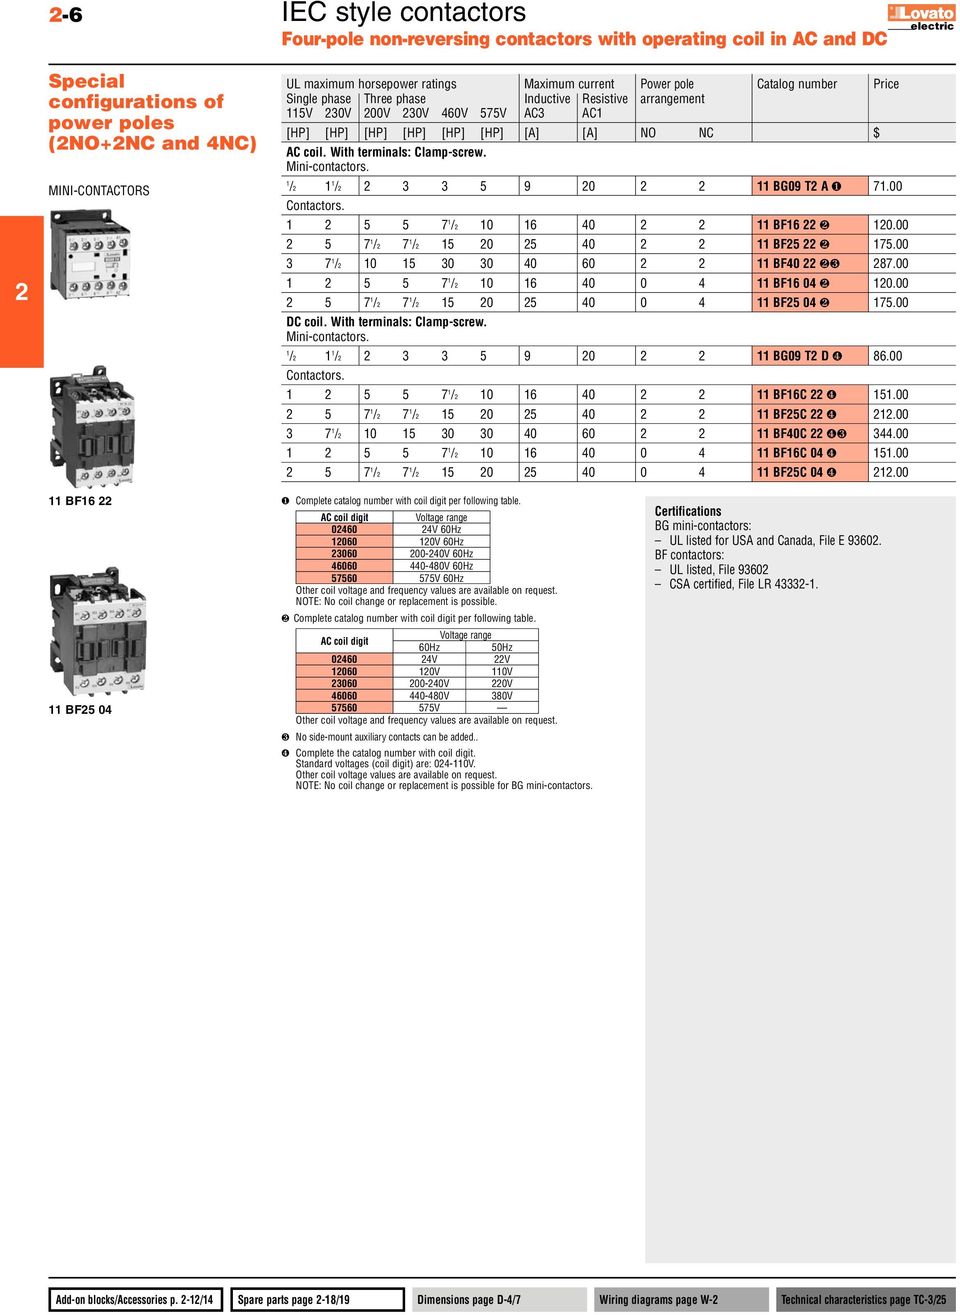 Mini-contactors. / / 3 3 5 9 0 BG09 T A ❶ 7.00 Contactors. 5 5 7 / 0 6 40 BF6 ❷ 0.00 5 7 / 7 / 5 0 5 40 BF5 ❷ 75.00 3 7 / 0 5 30 30 40 60 BF40 ❷❸ 87.00 5 5 7 / 0 6 40 0 4 BF6 04 ❷ 0.